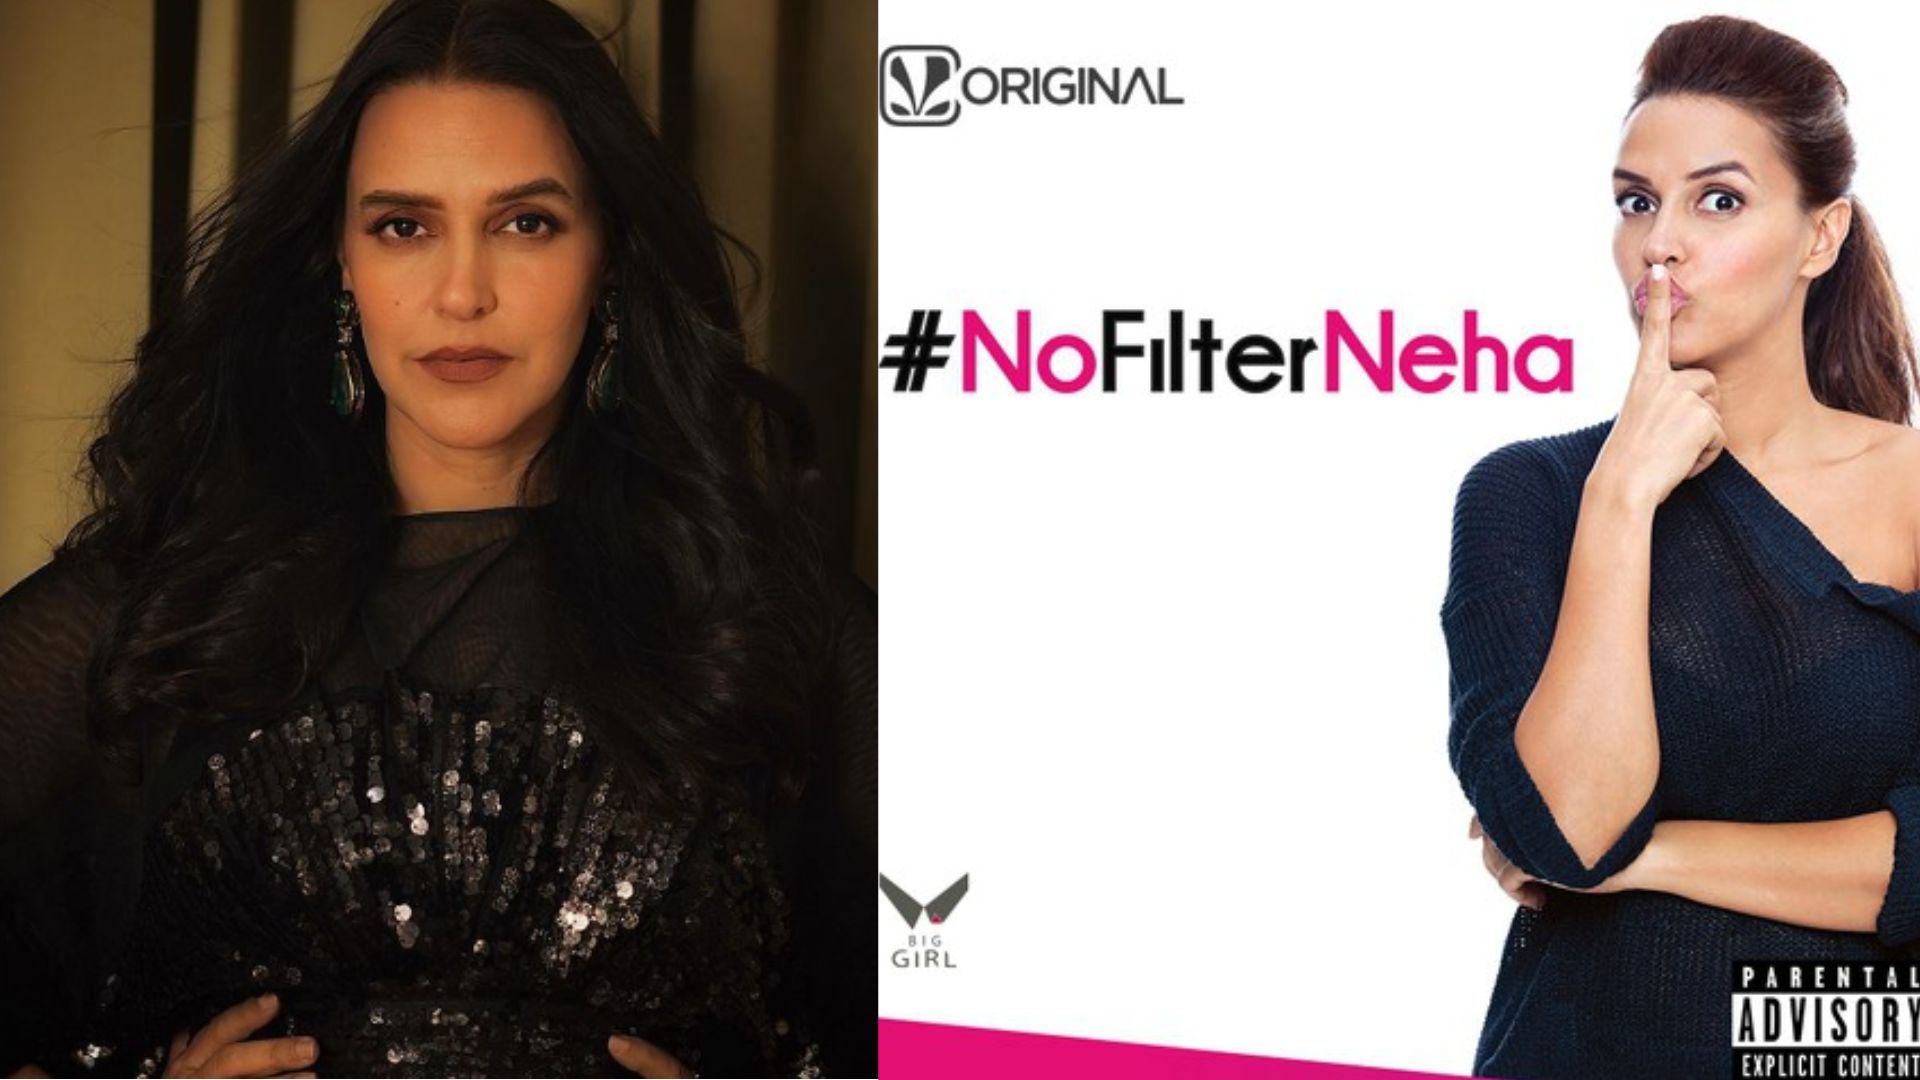 No Filter Neha Promo released: नेहा धूपिया की शो ‘नो फिल्टर नेहा’ का प्रोमो जारी, पोस्ट शेयर कर कहा…